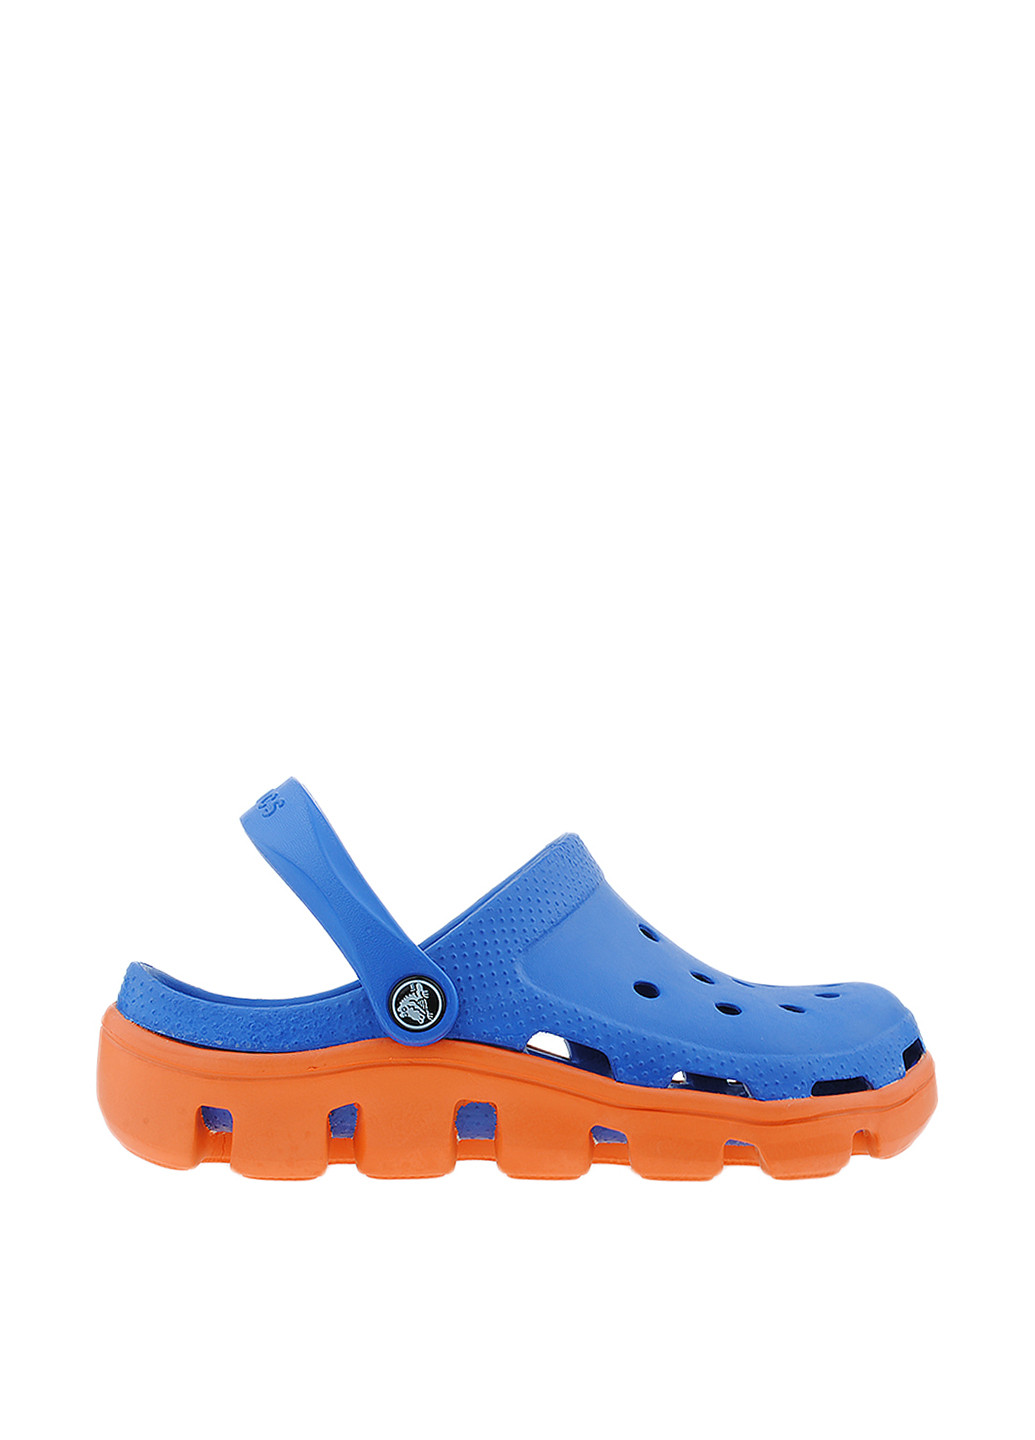 Синие сабо Crocs без каблука